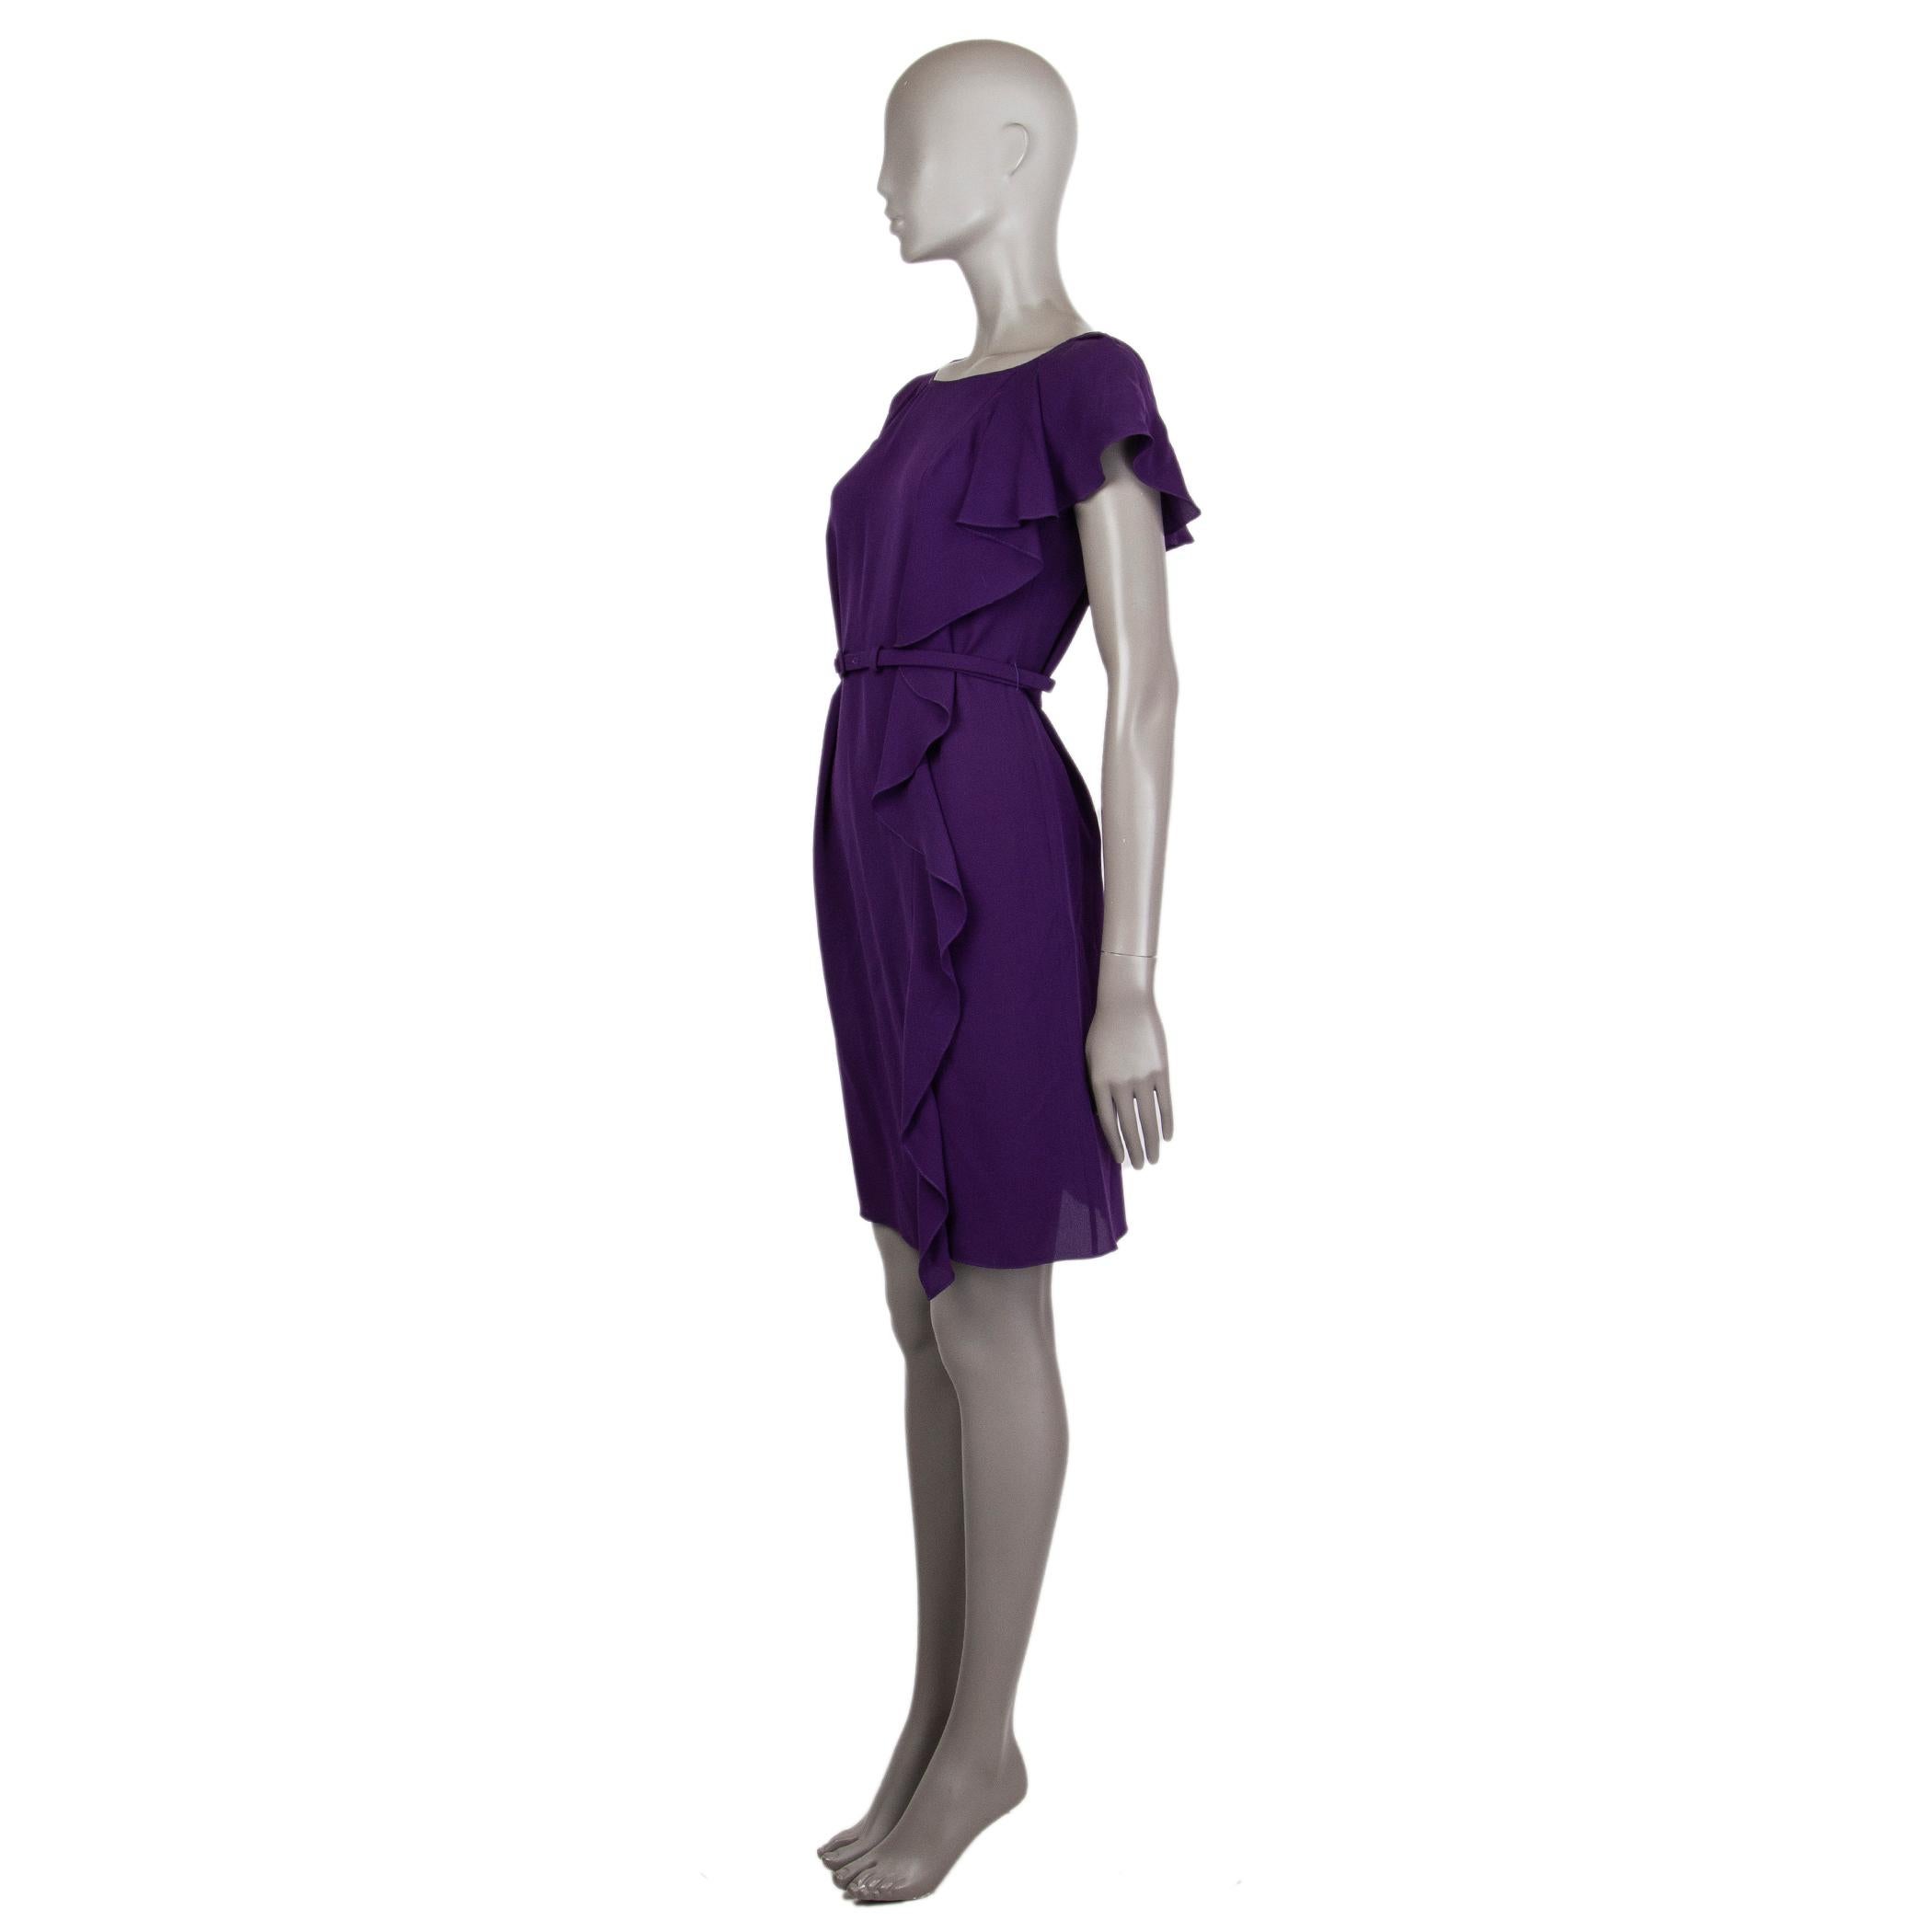 La robe sans manches Prada en soie violette (100%) à la coupe droite comporte une ceinture pour créer une silhouette. Décorée d'une ondulation latérale de l'épaule gauche jusqu'au devant. A été porté et est en excellent état.

Taille de l'étiquette